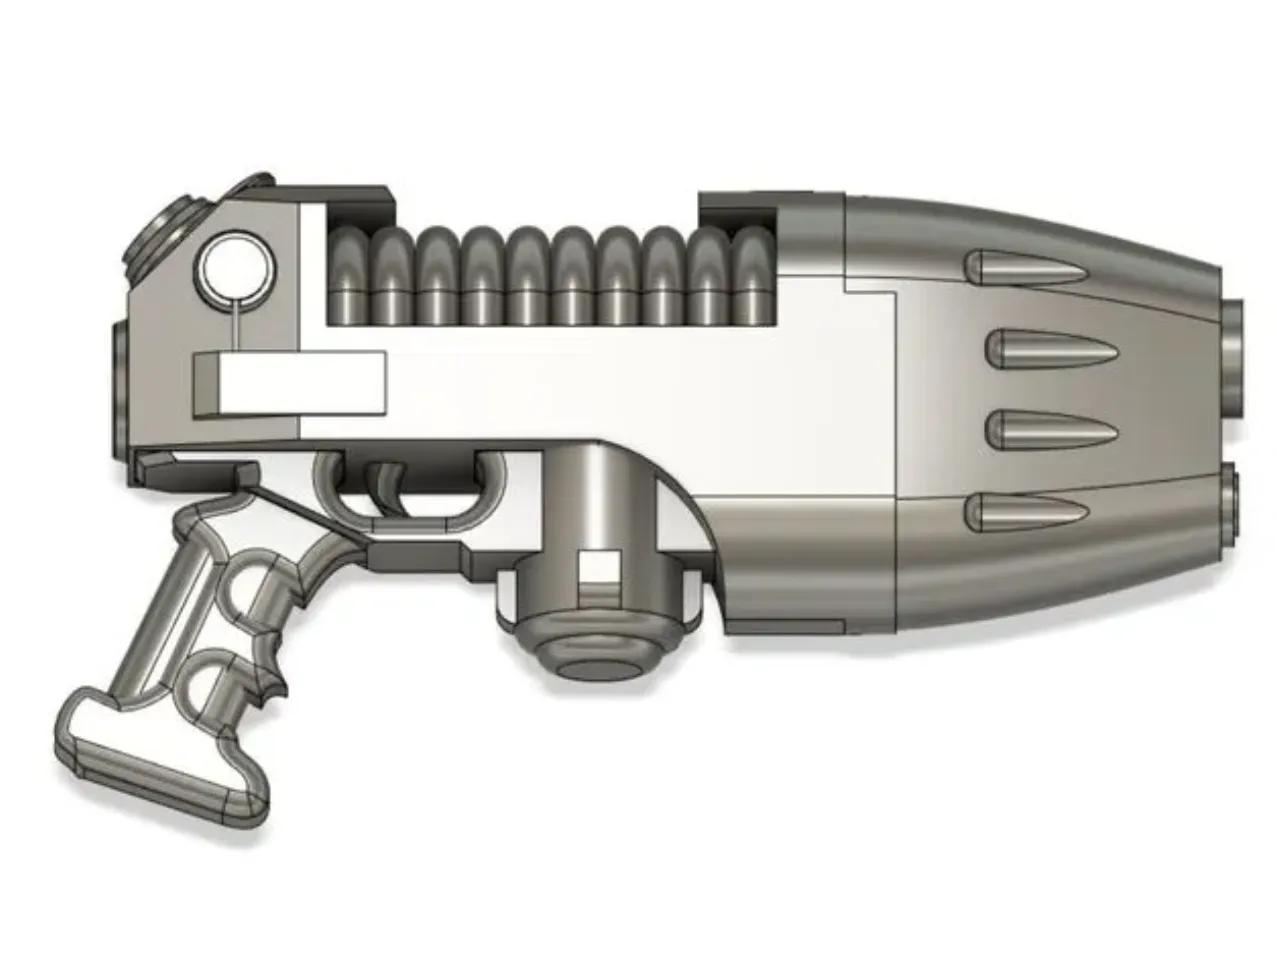 40k plasma gun